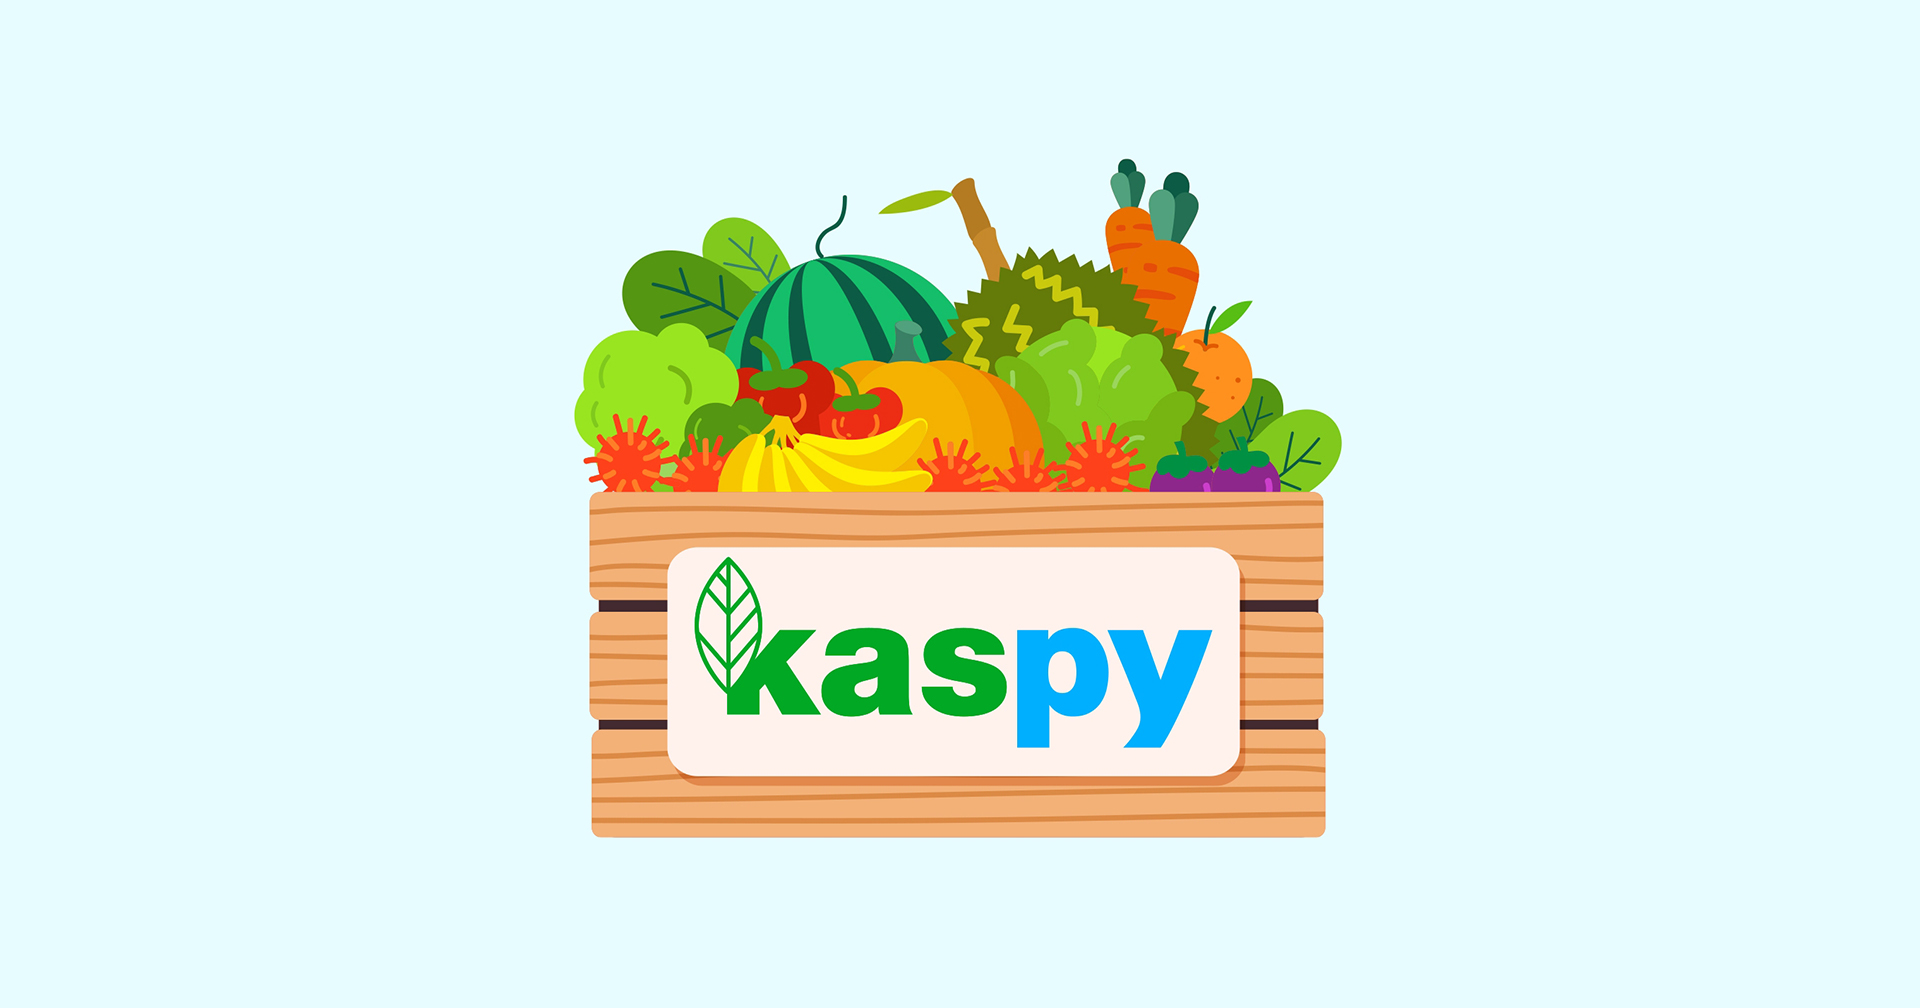 เปิดตัว Kaspy แอป ซื้อ-ขาย สินค้าเกษตร สัญชาติไทย กับฟีเจอร์แคสปี้คัดสรรสุดเจ๋ง!